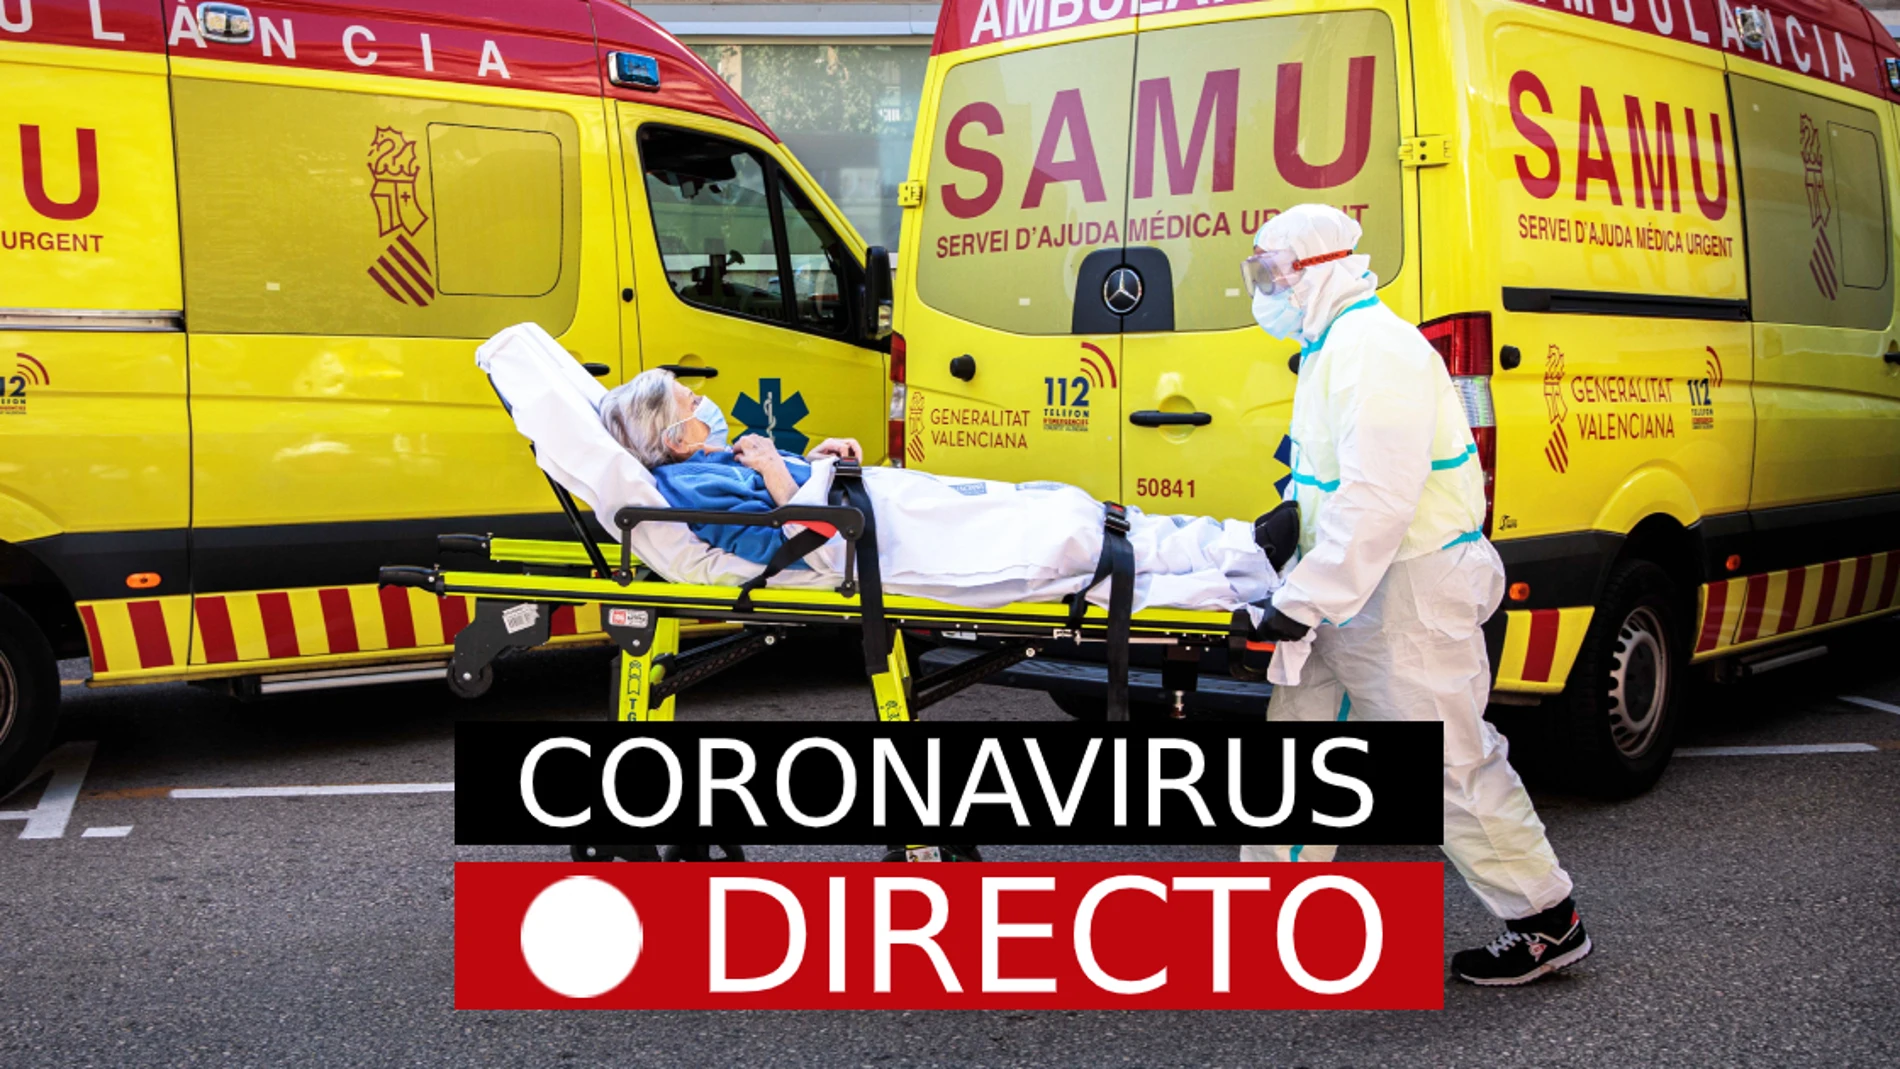 Coronavirus en España, en directo |  Última hora del estado de alarma en España y toque de queda